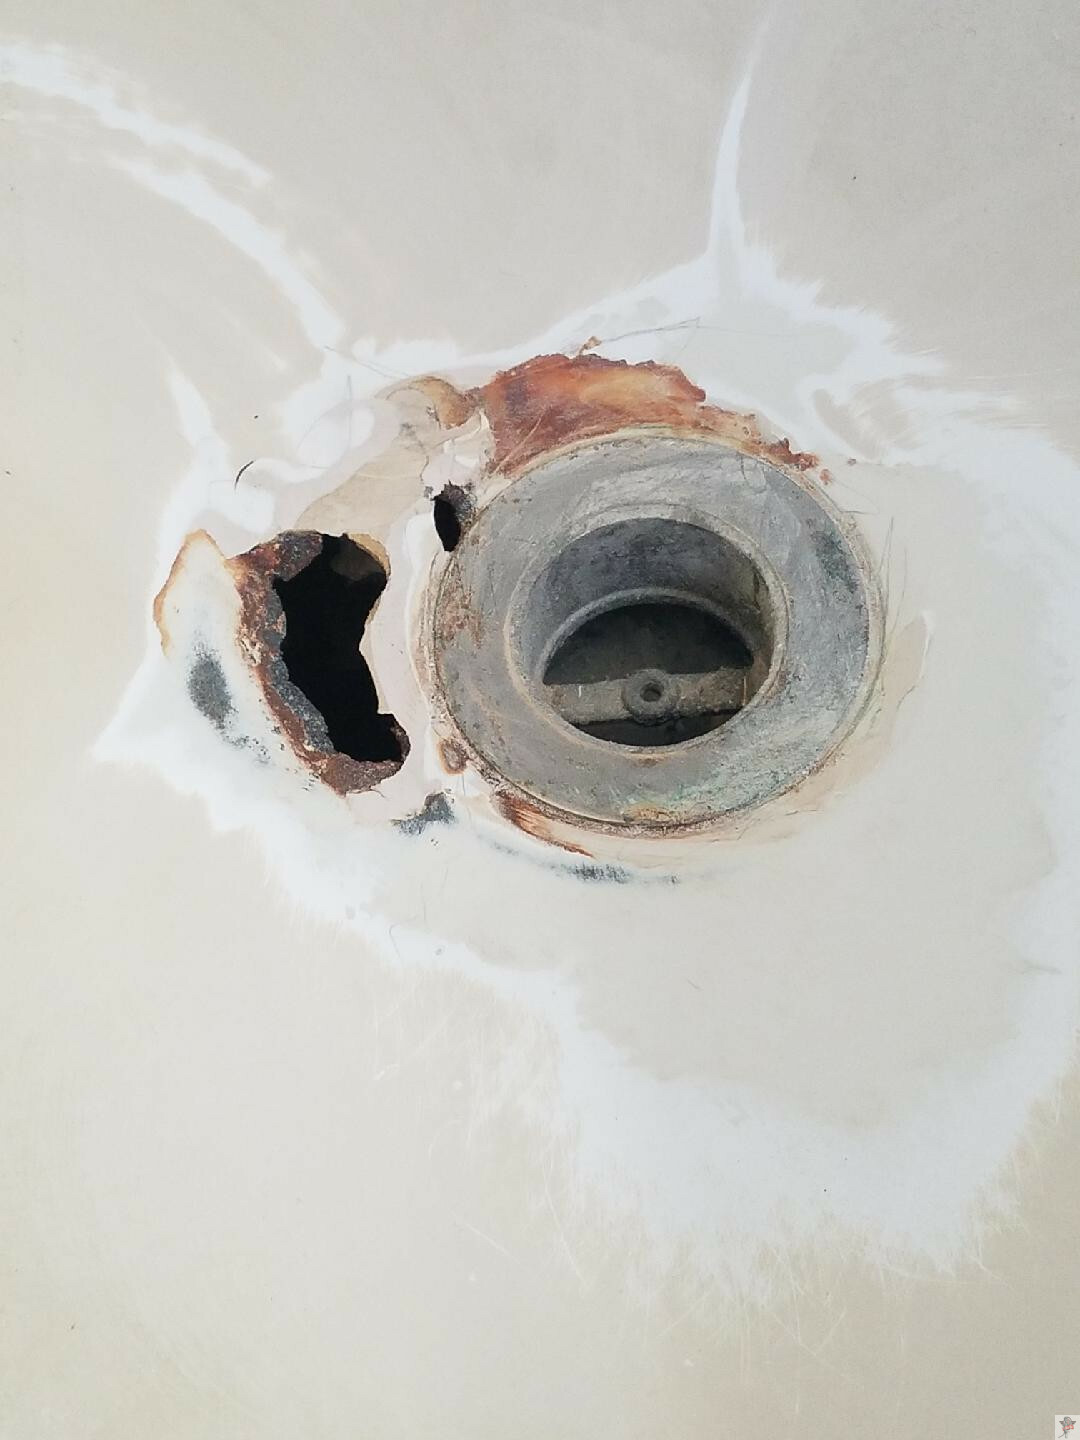 Tub Refinishing Repair Rust More, How To Repair Rusted Bathtub Drain Pipes